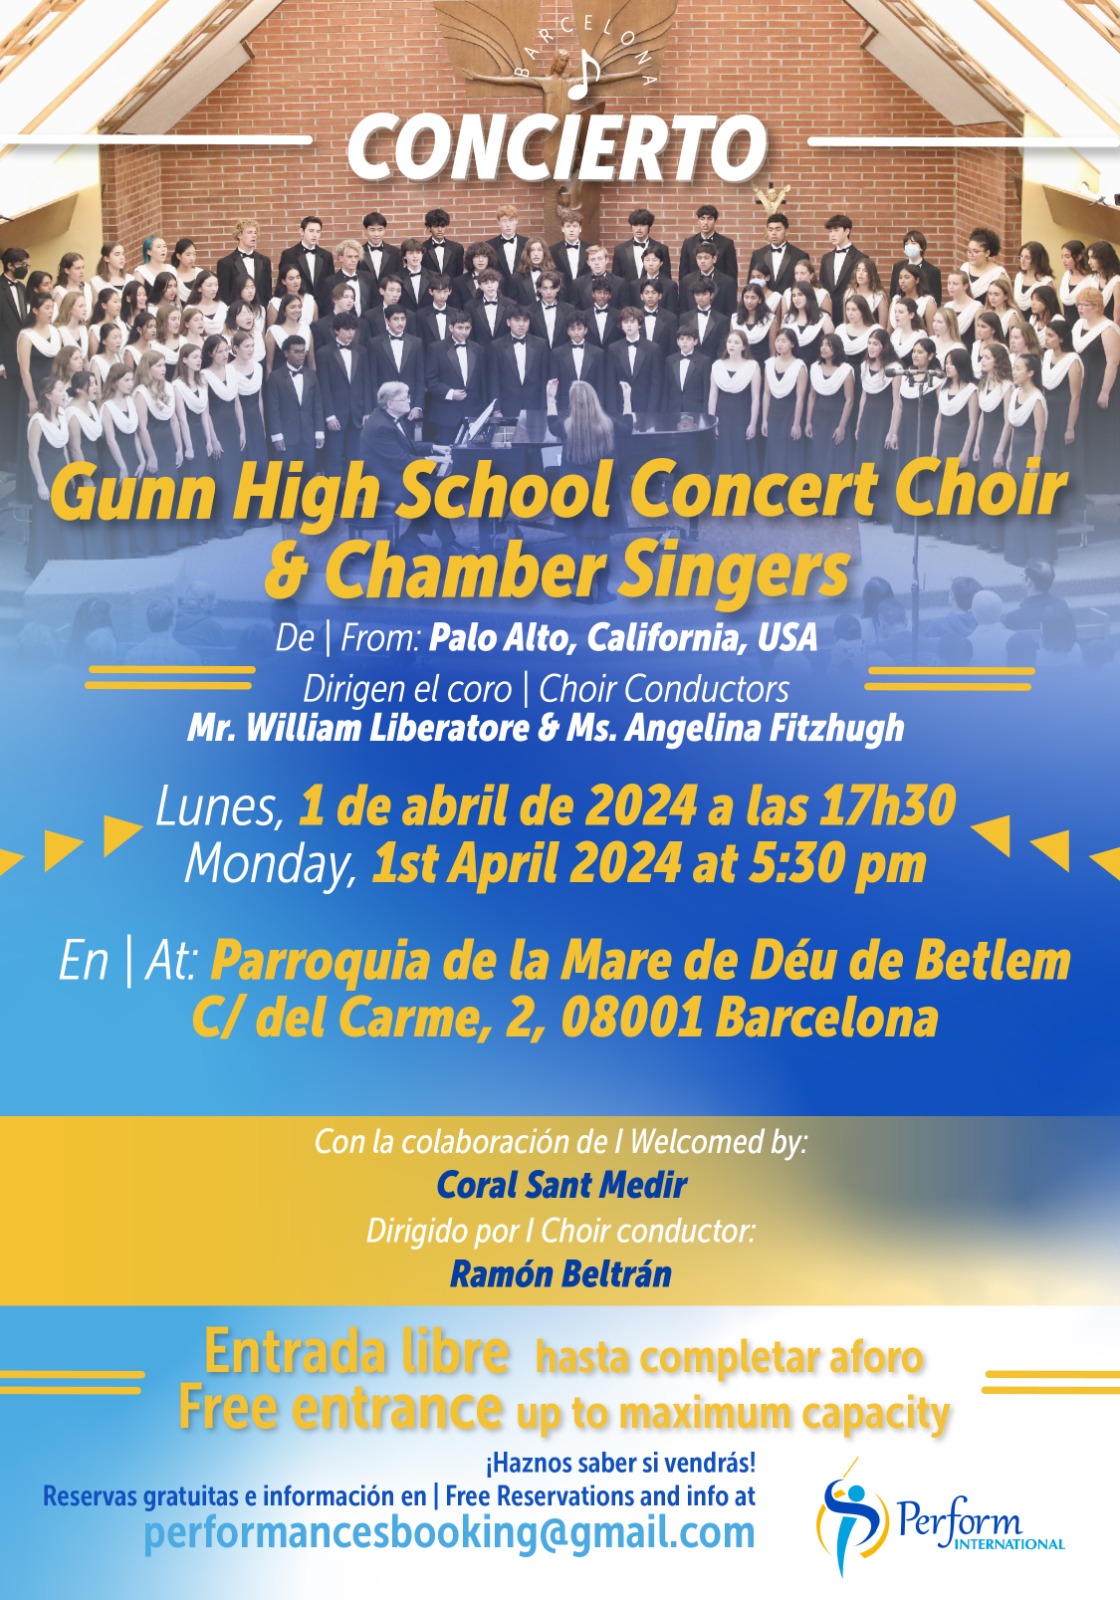 Actuació al concert de la coral californiana "Gunn High School Concert Choir & Chamber Singers"